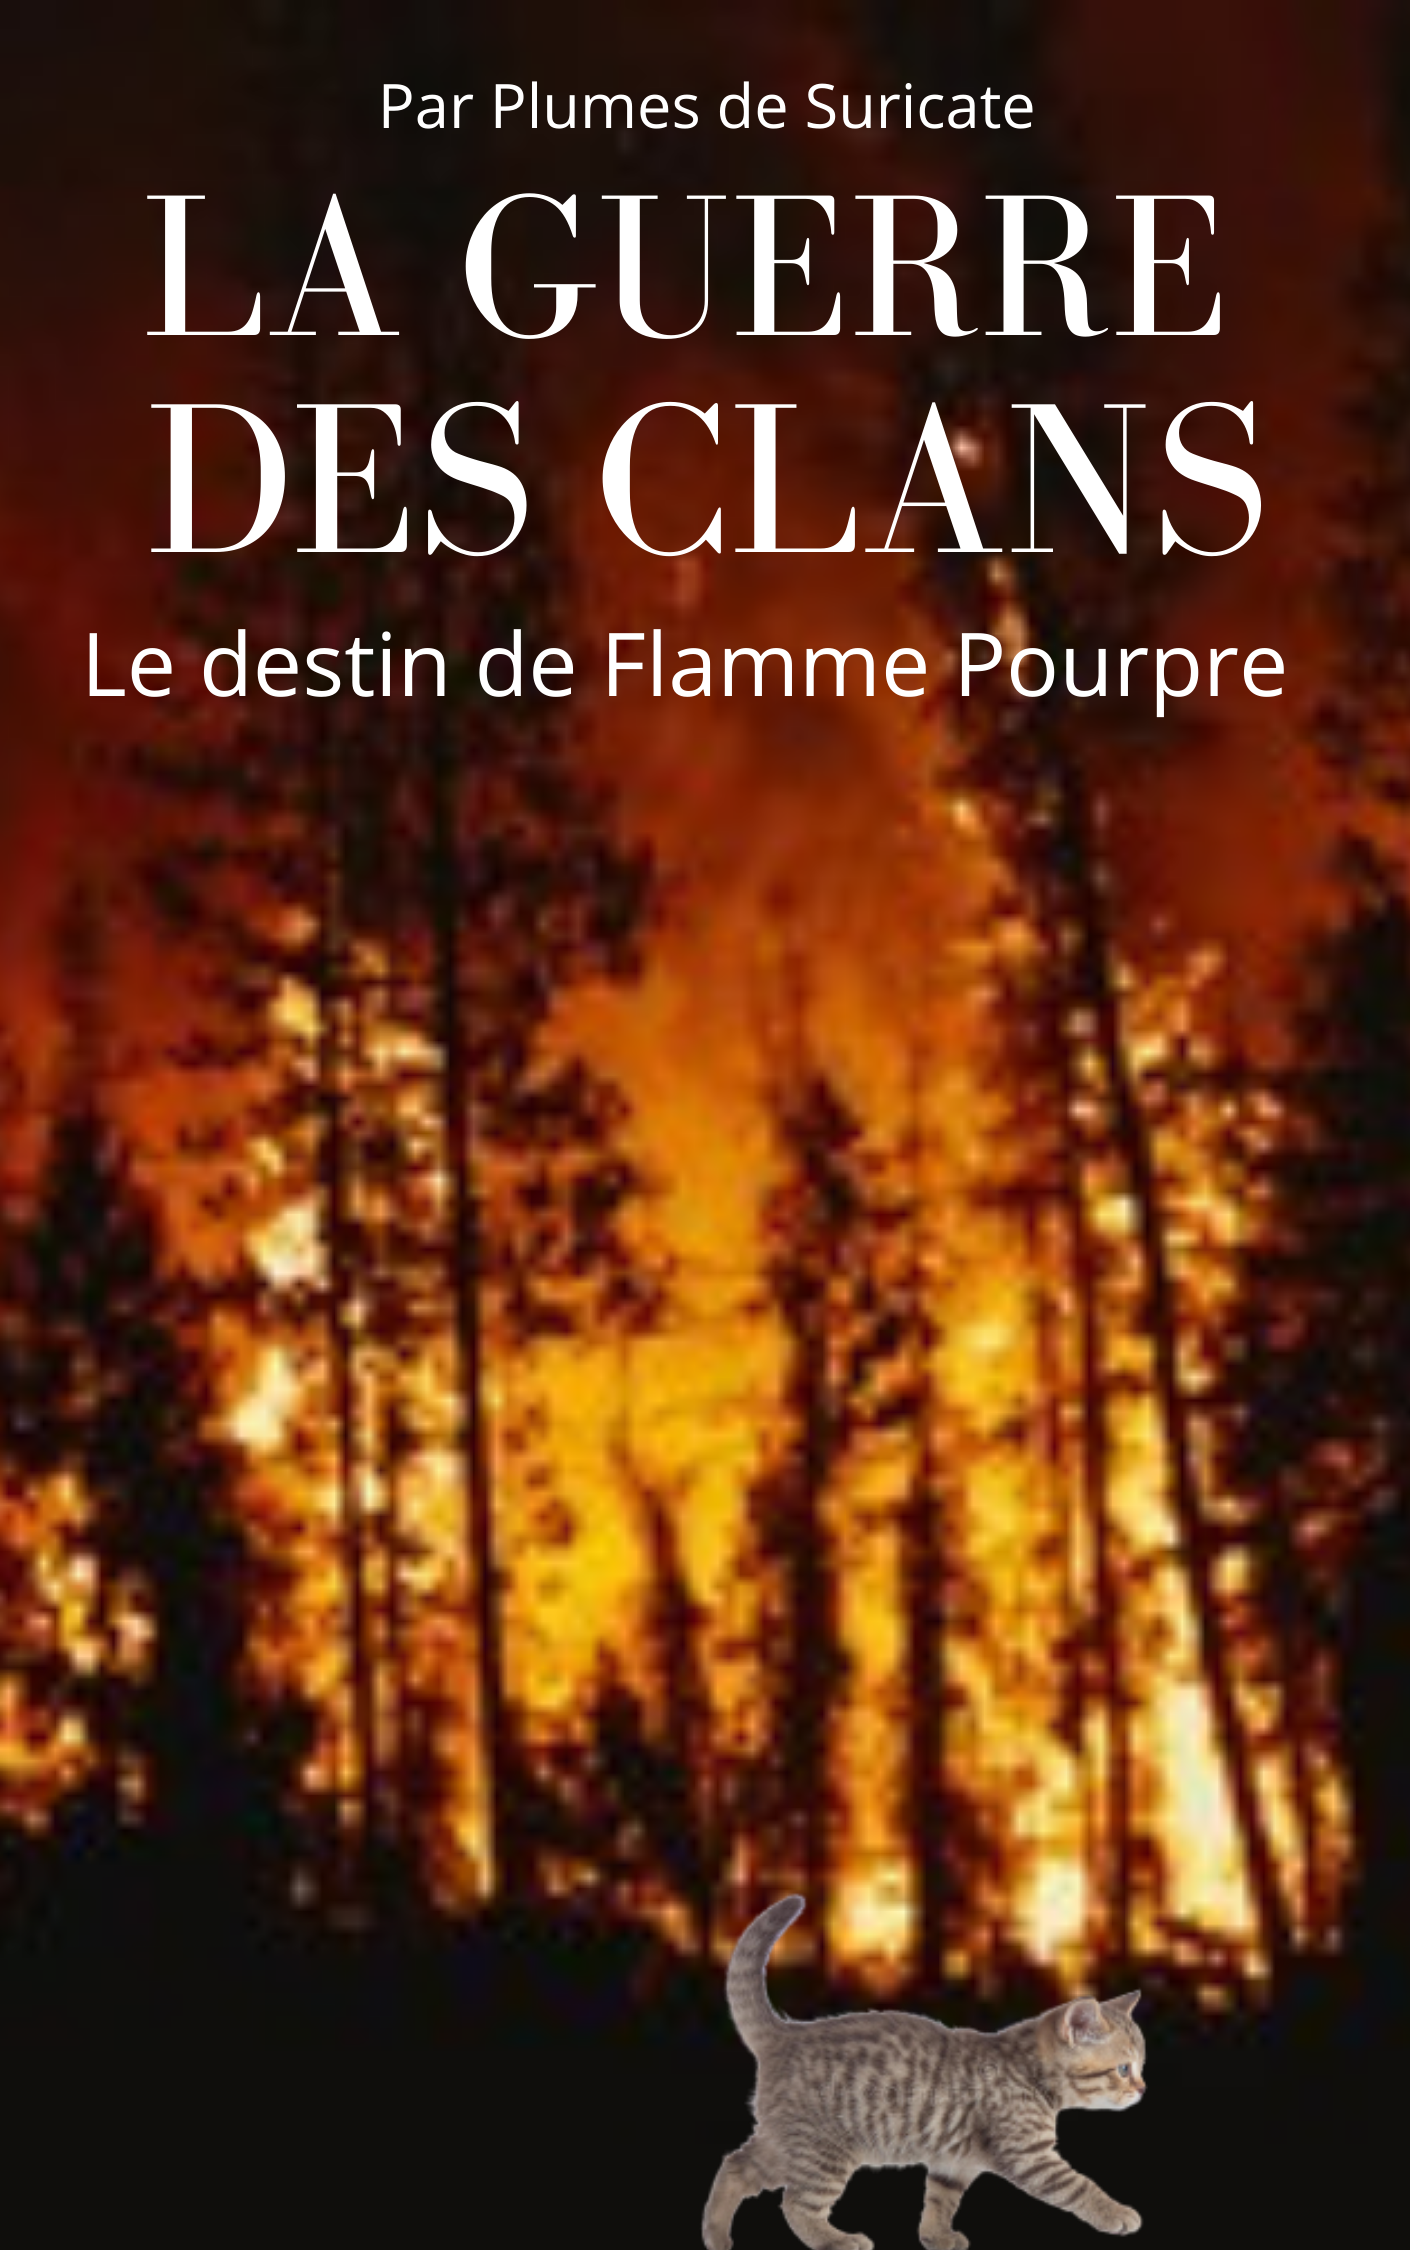 Le destin de Flamme Pourpre, Wiki Vos histoires de LGDC